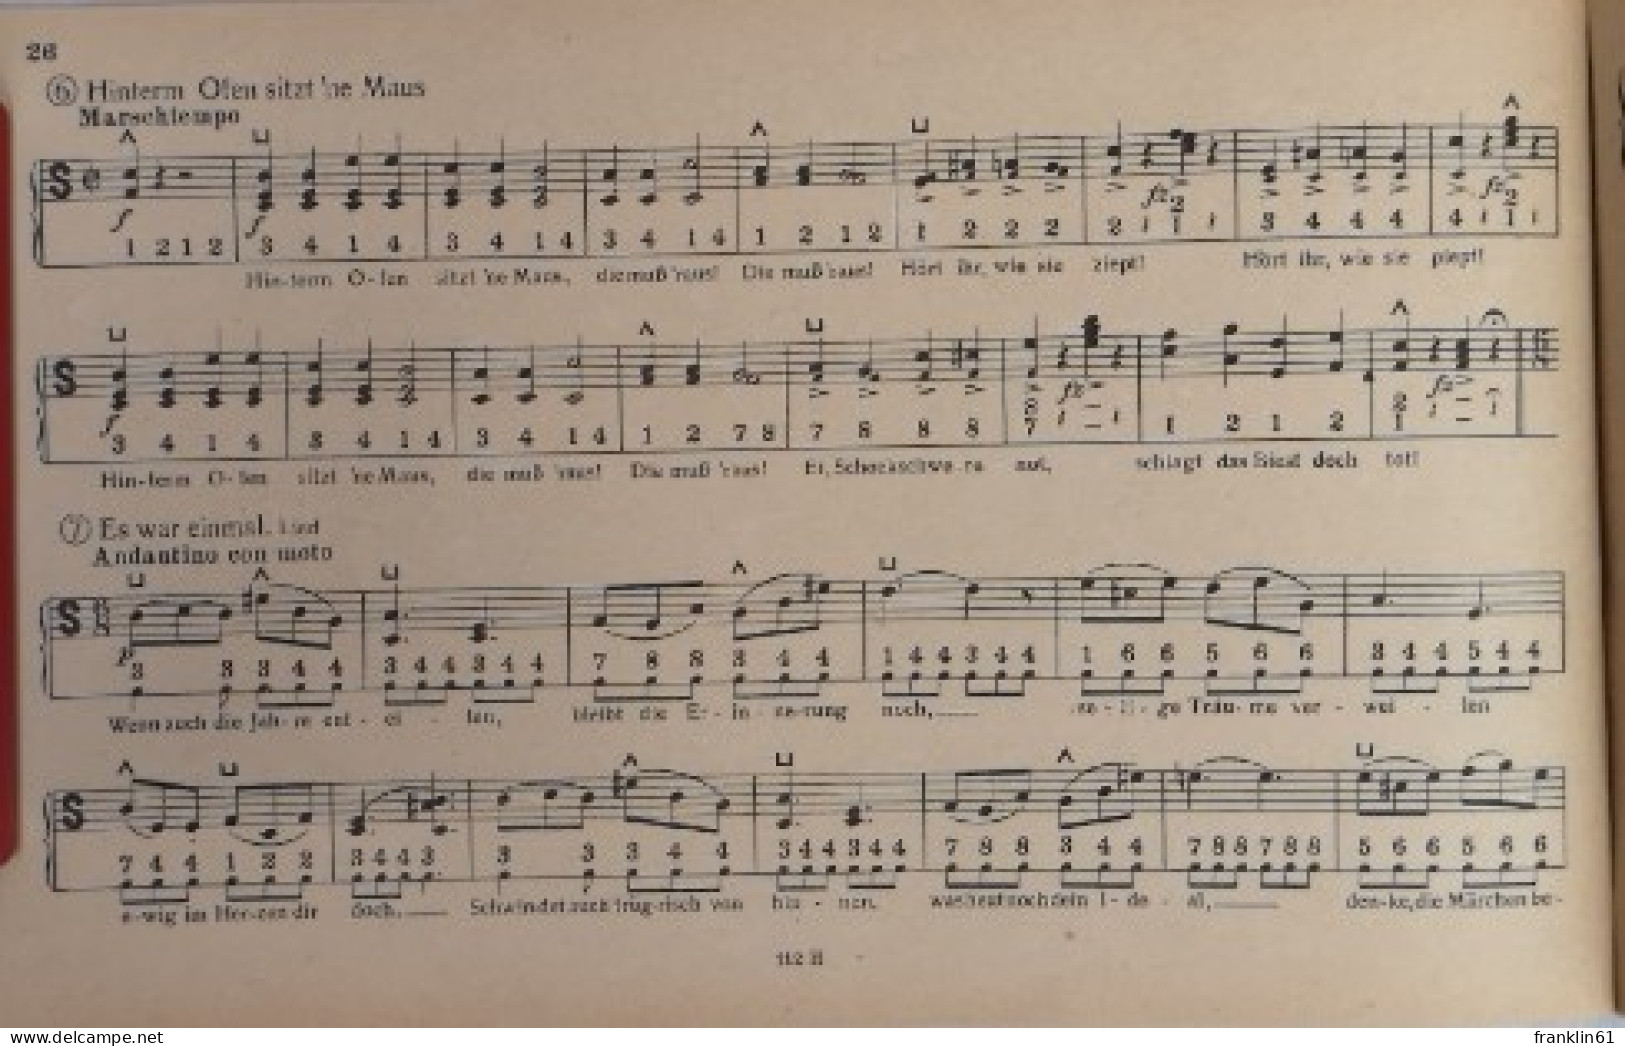 Paul Lincke. Melodien Für Handharmonika. - Music